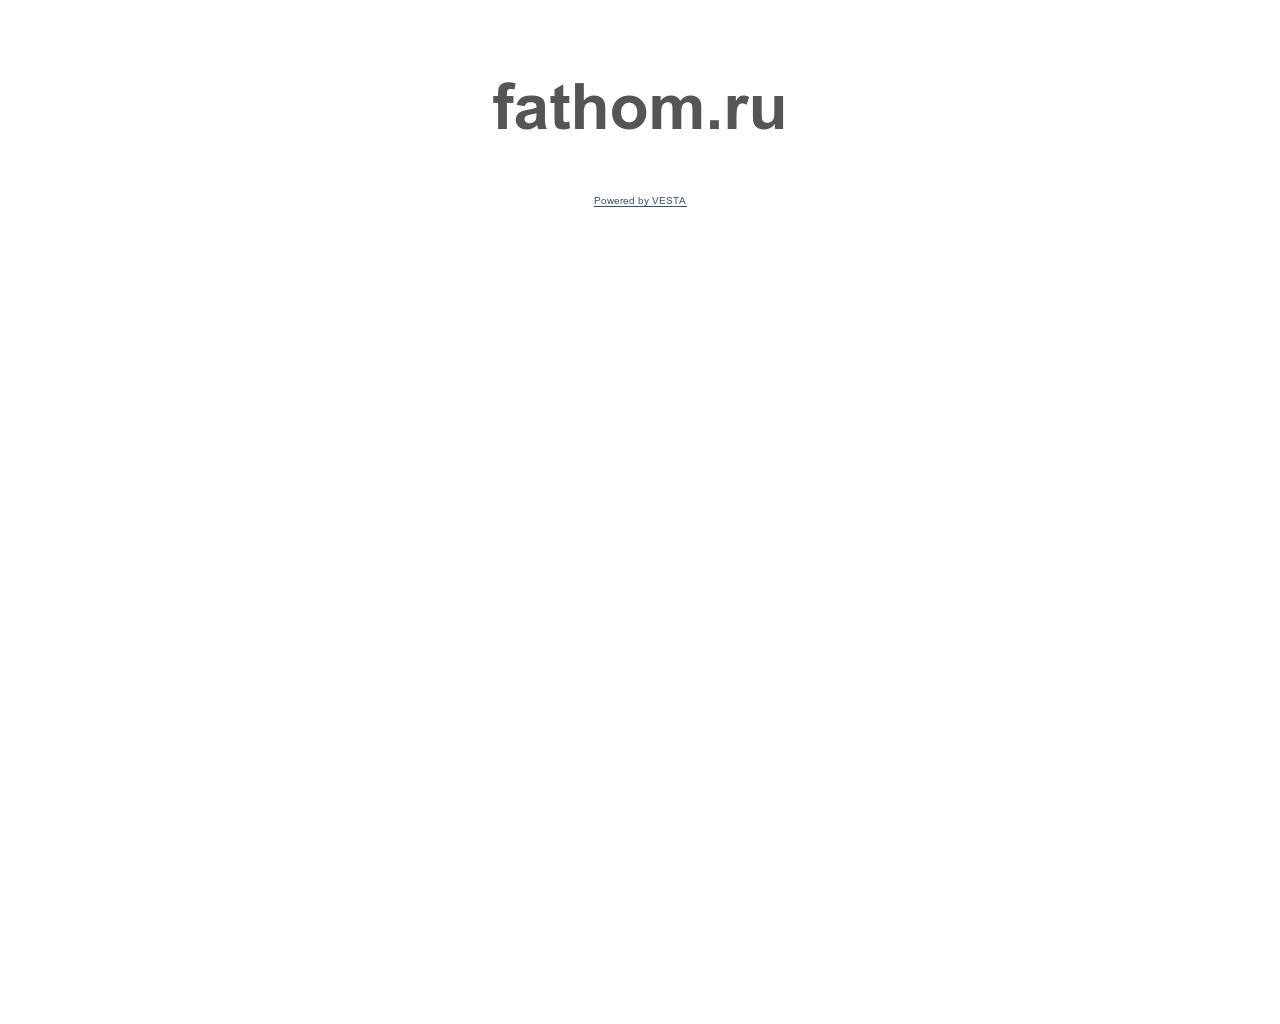 Изображение сайта fathom.ru в разрешении 1280x1024